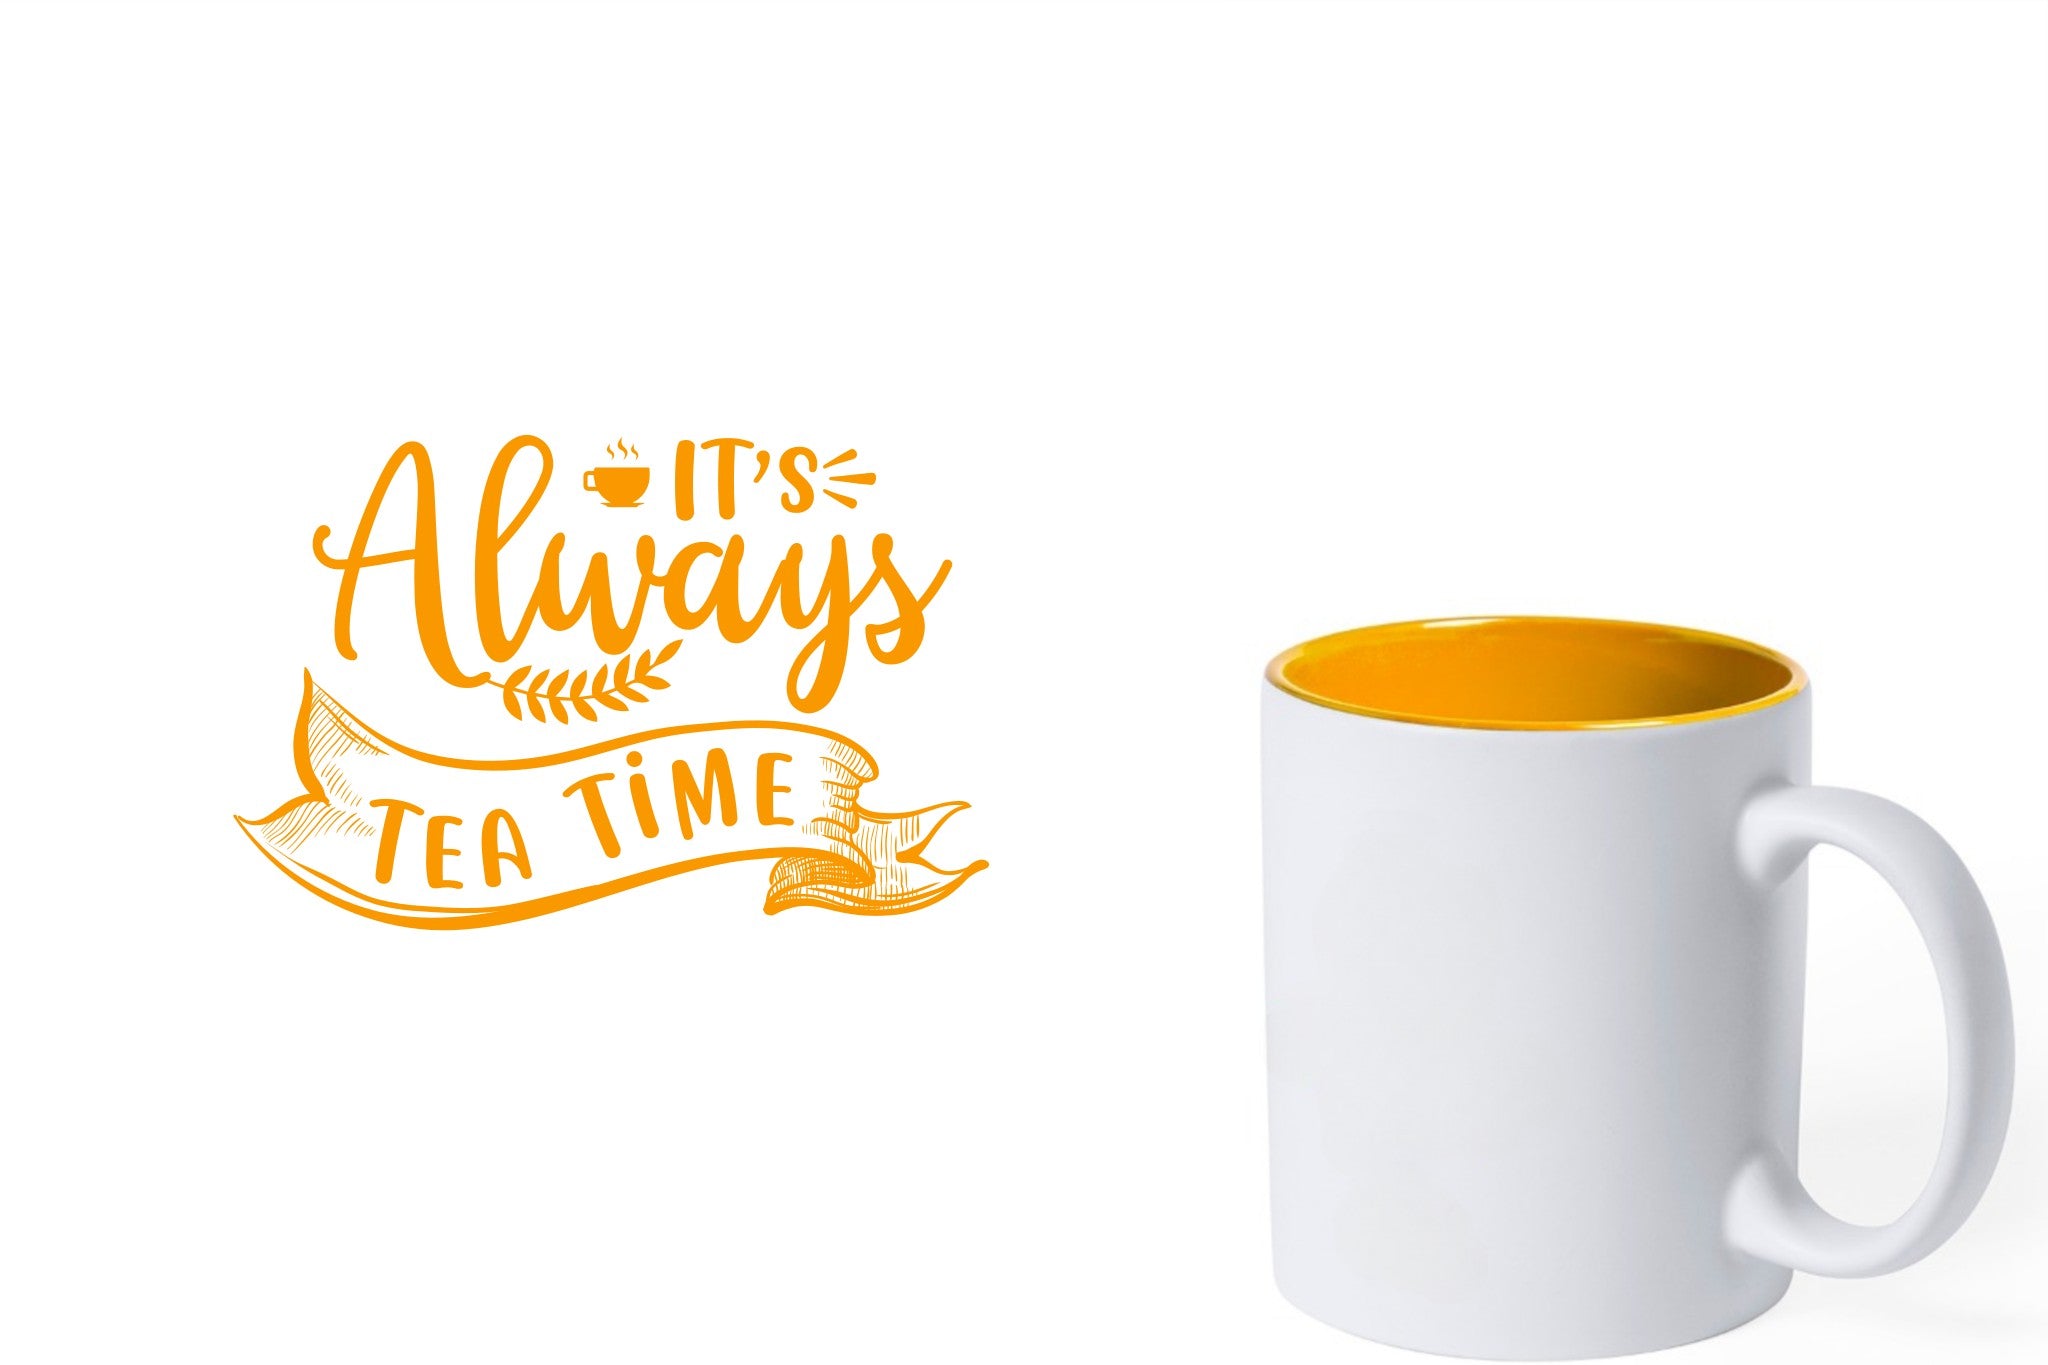 witte keramische mok met gele gravure  'It's always tea time'.